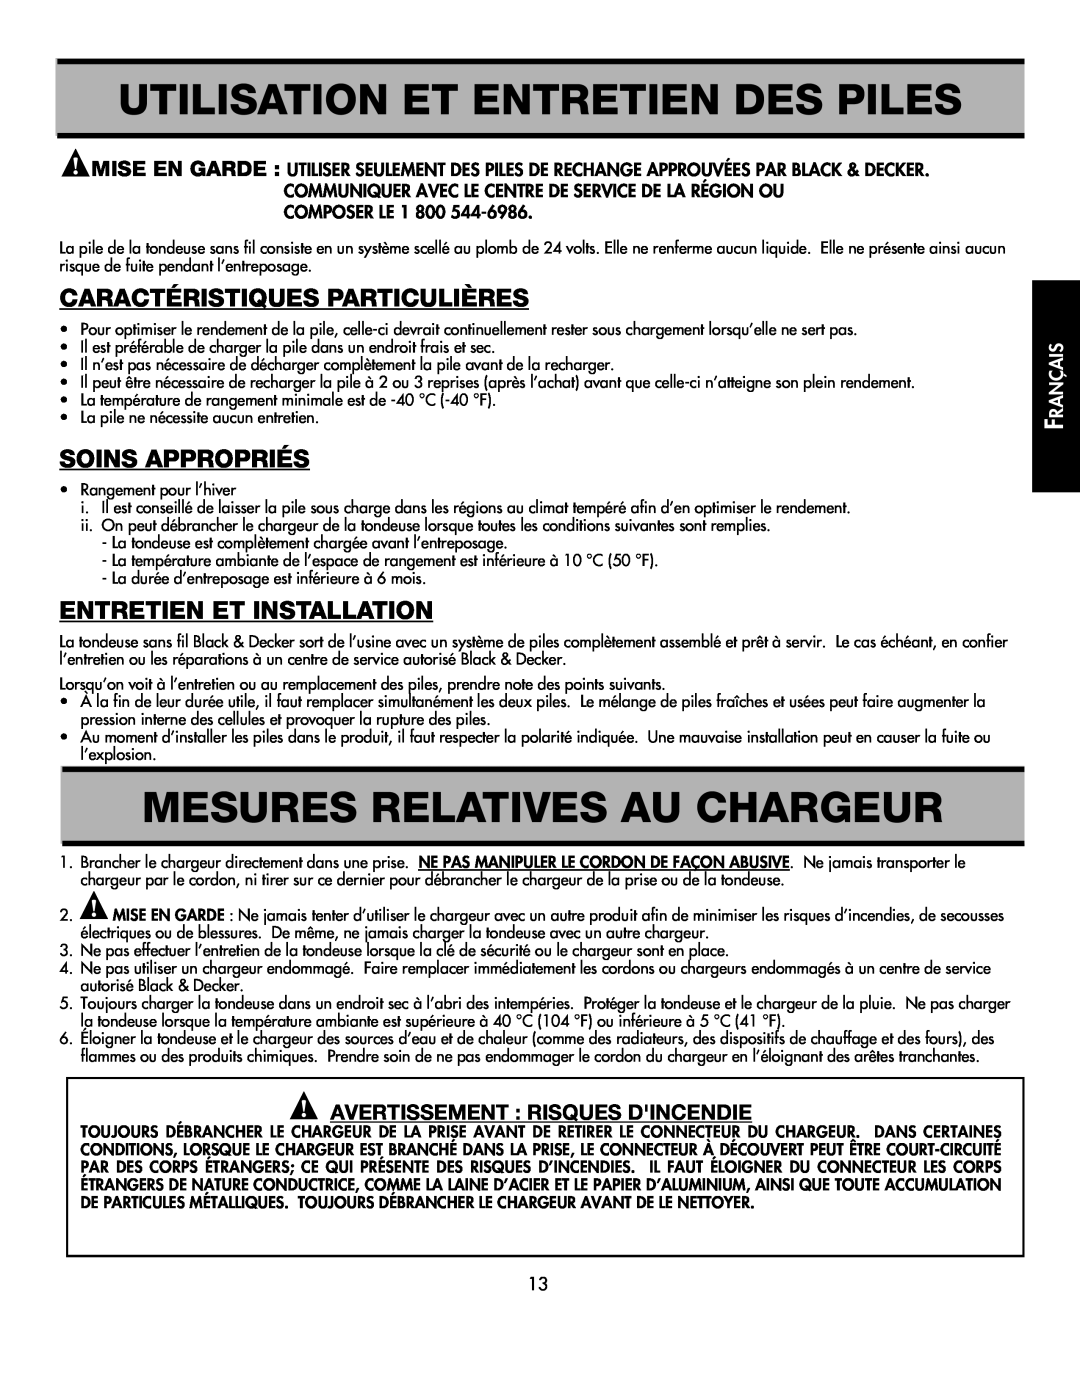 Black & Decker CMM1000 Utilisation Et Entretien Des Piles, Mesures Relatives Au Chargeur, Caractéristiques Particulières 